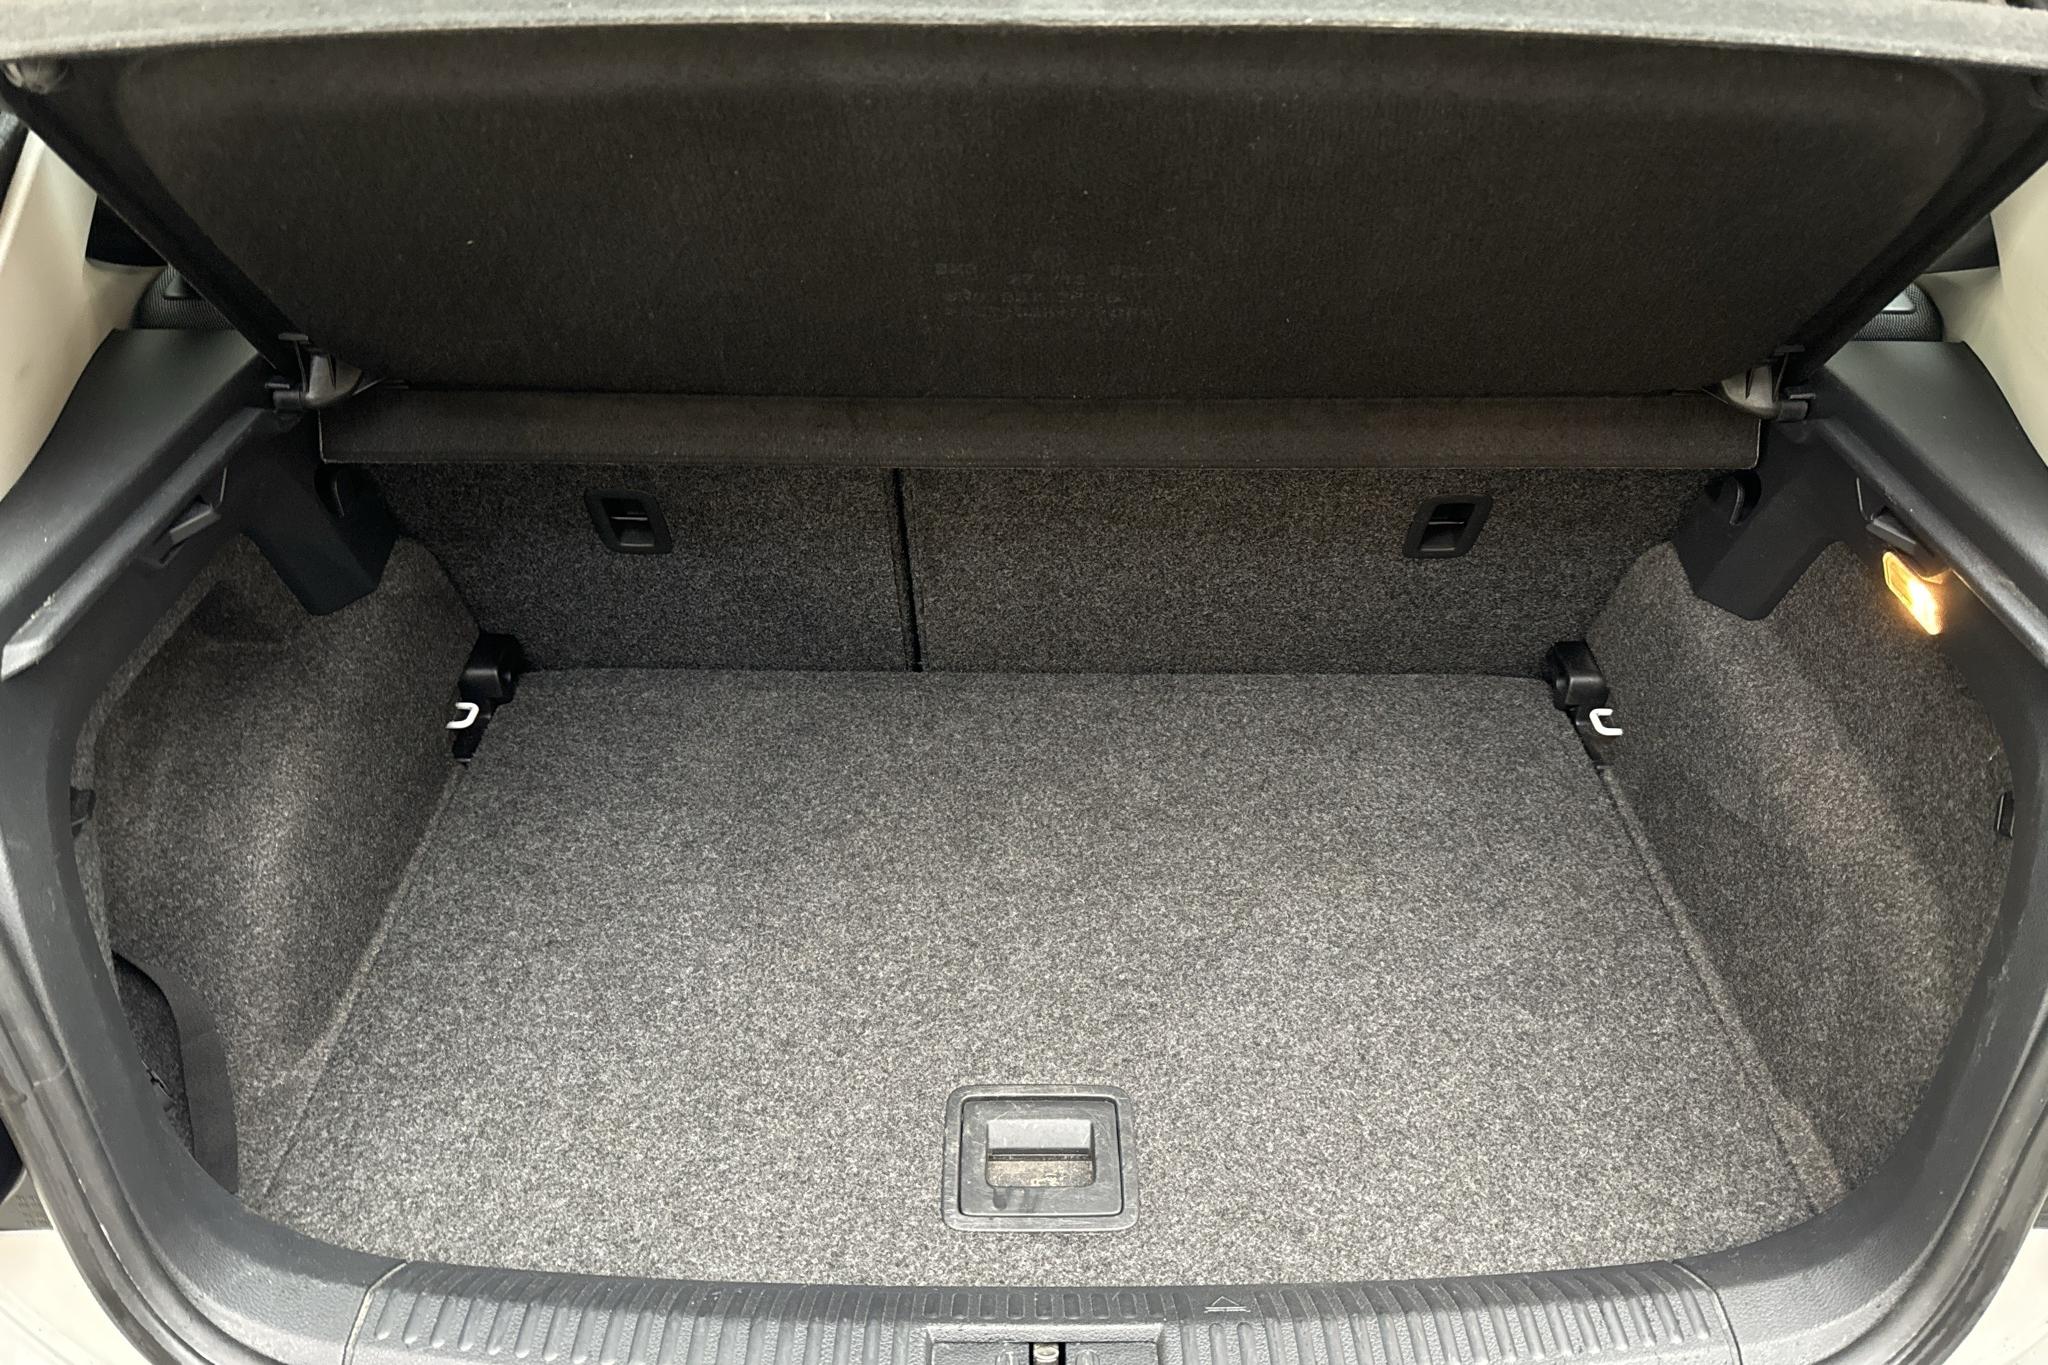 VW Polo 1.2 TSI 5dr (90hk) - 142 270 km - Käsitsi - valge - 2013